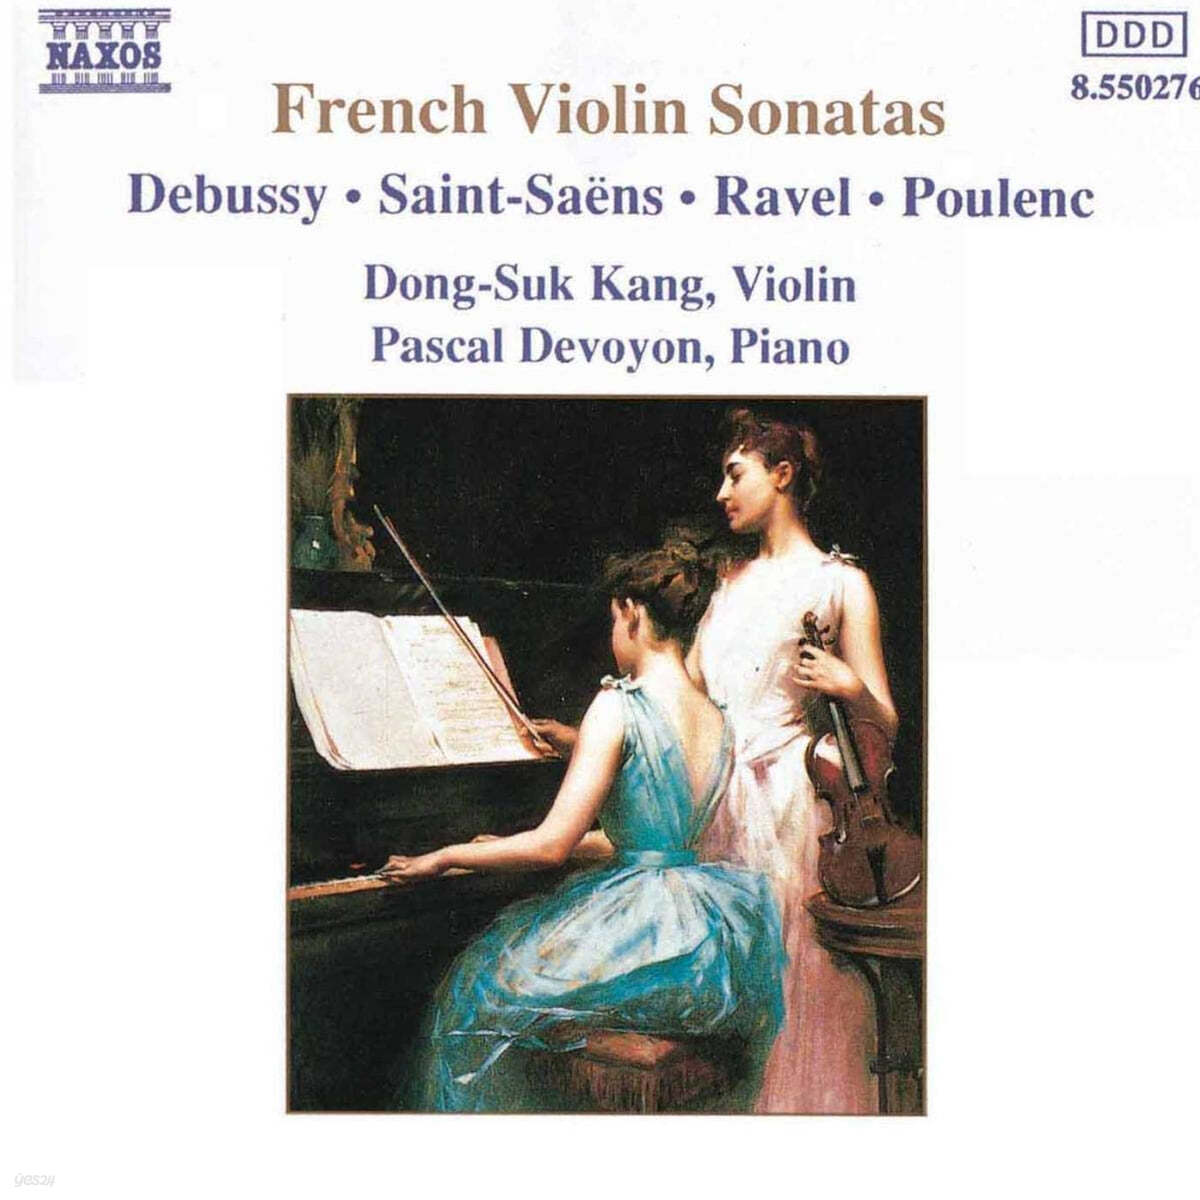 강동석 (Dong-Suk Kang) - 드뷔시 / 생상 / 라벨 / 풀랑: 바이올린 소나타 (Debussy / Saint-Saens / Ravel / Poulenc: Violin Sonatas) 